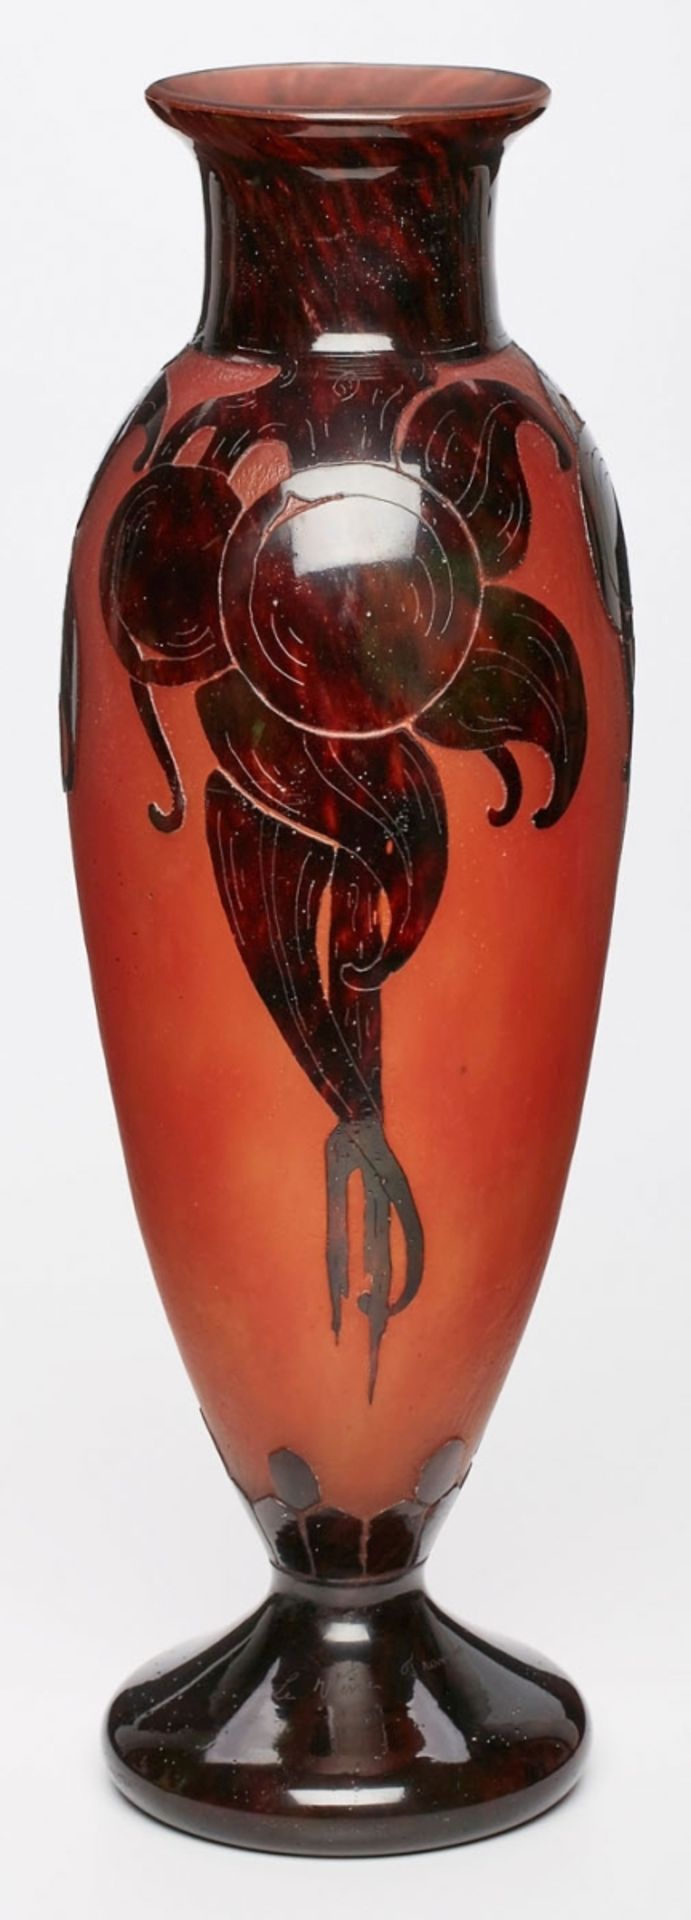 Gr. Vase "Prunes", Schneider um 1920.